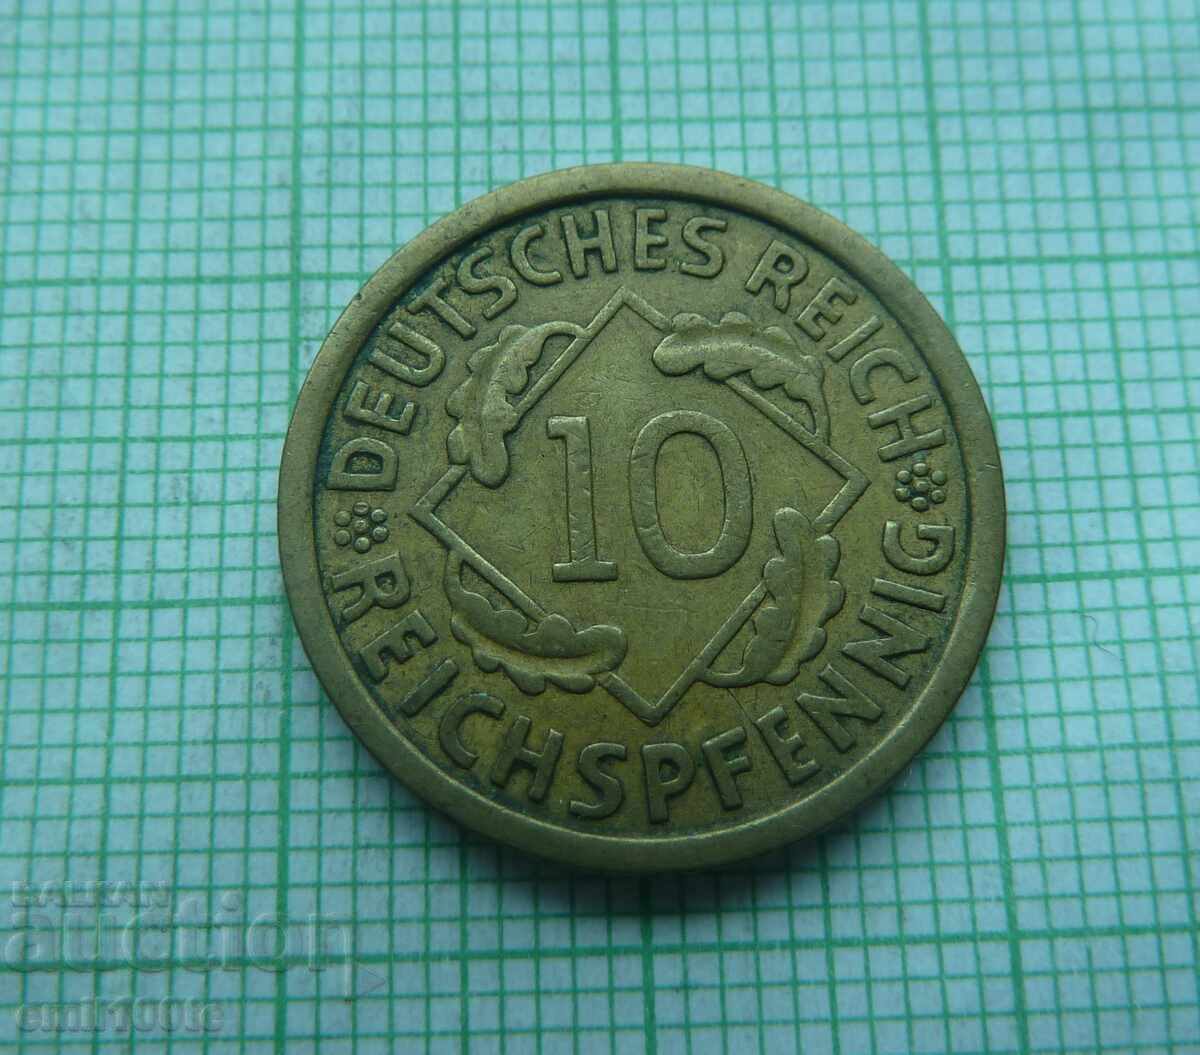 10 pfennig 1929 Germania